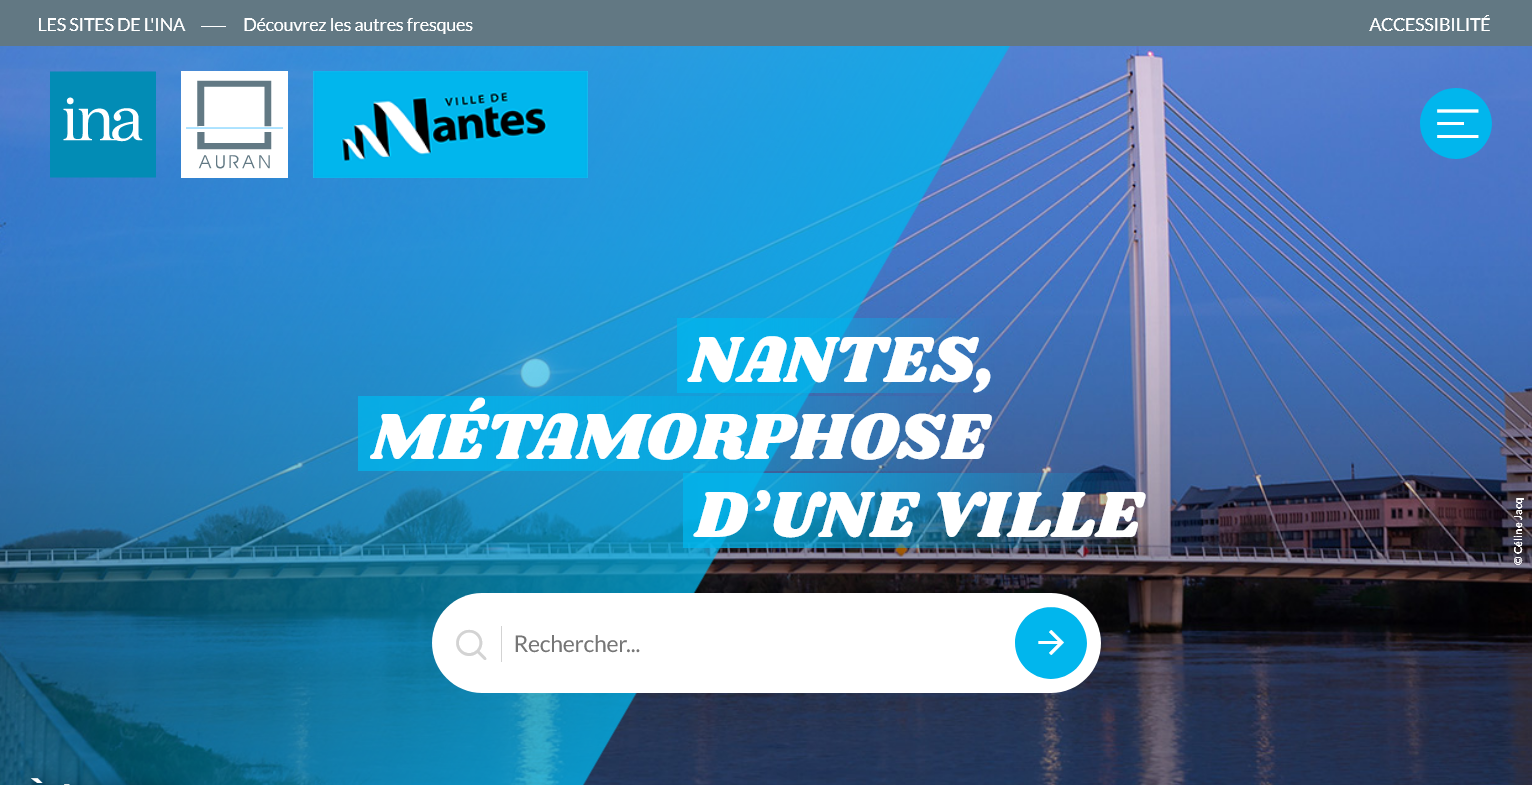 Lien vers le site internet Nantes, métamorphose d'une ville